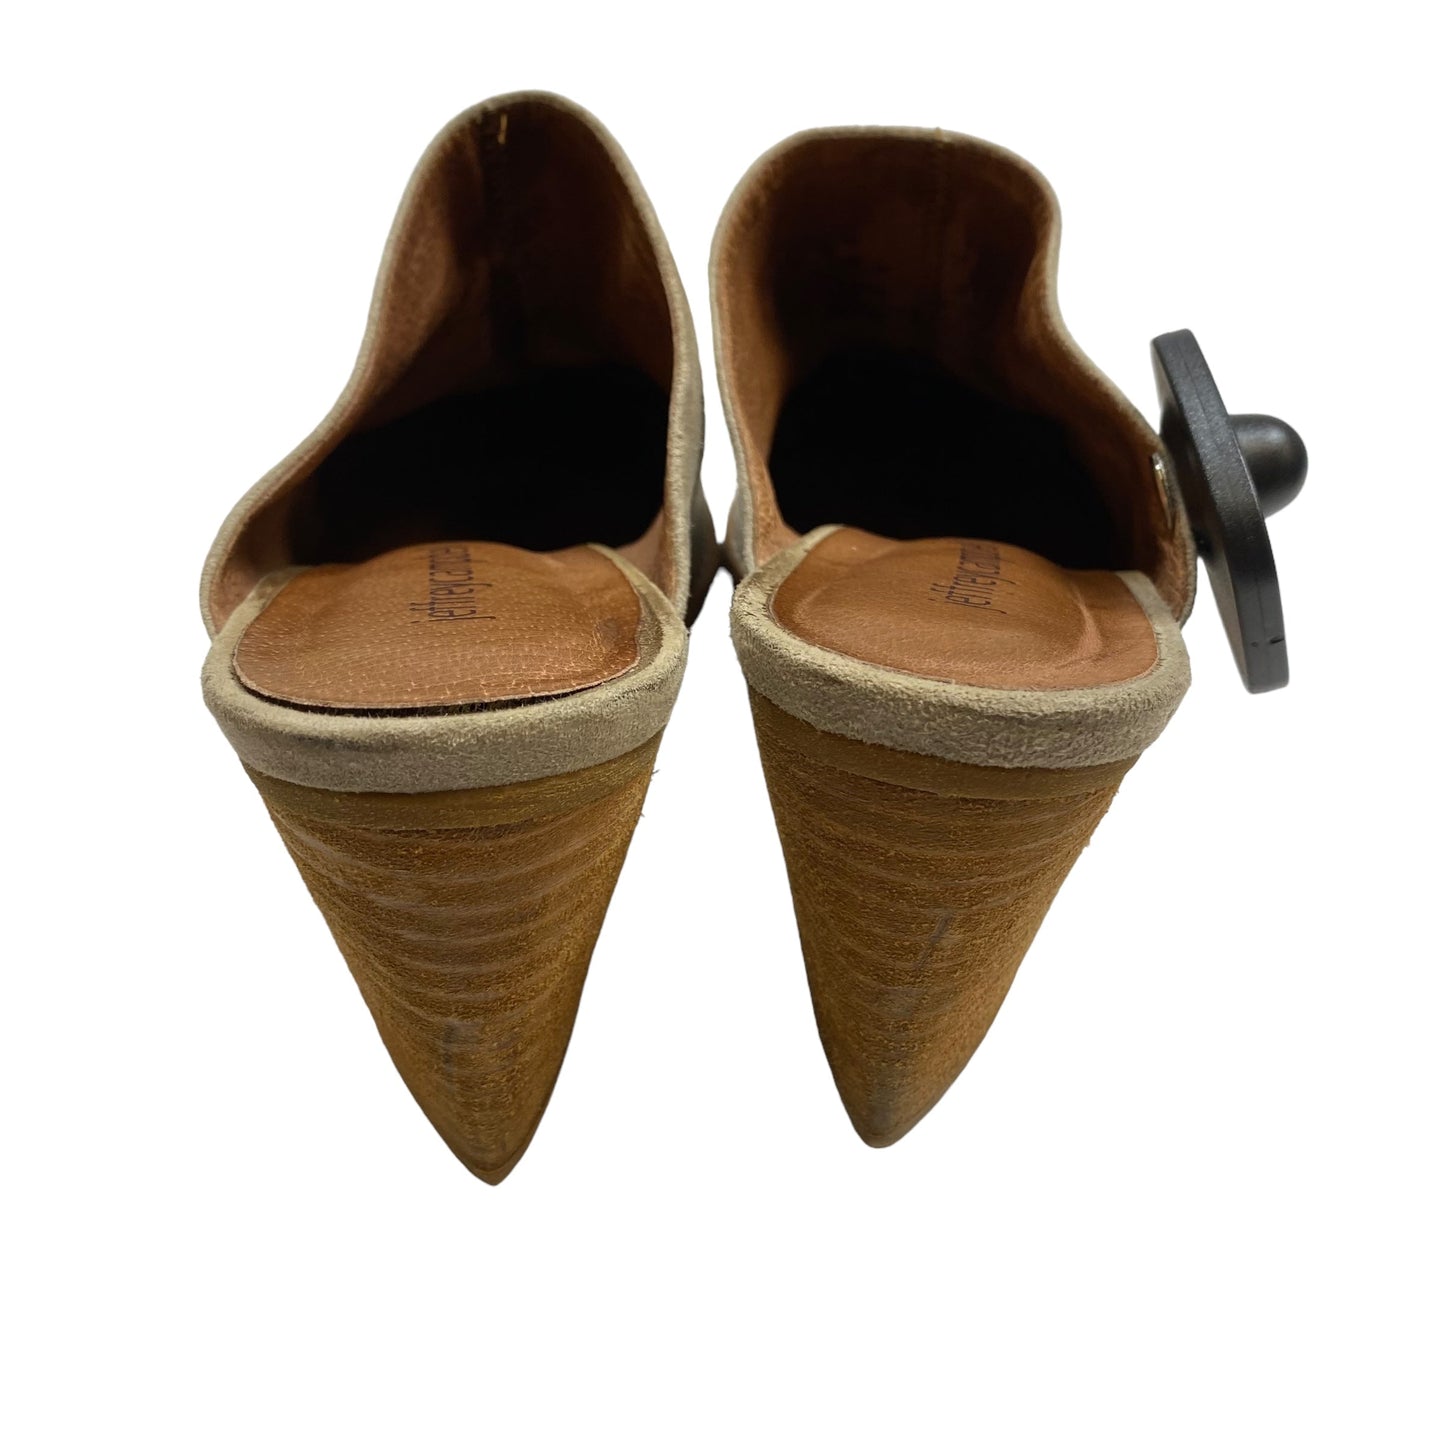 Tan Shoes Heels Block Jeffery Campbell, Size 7.5